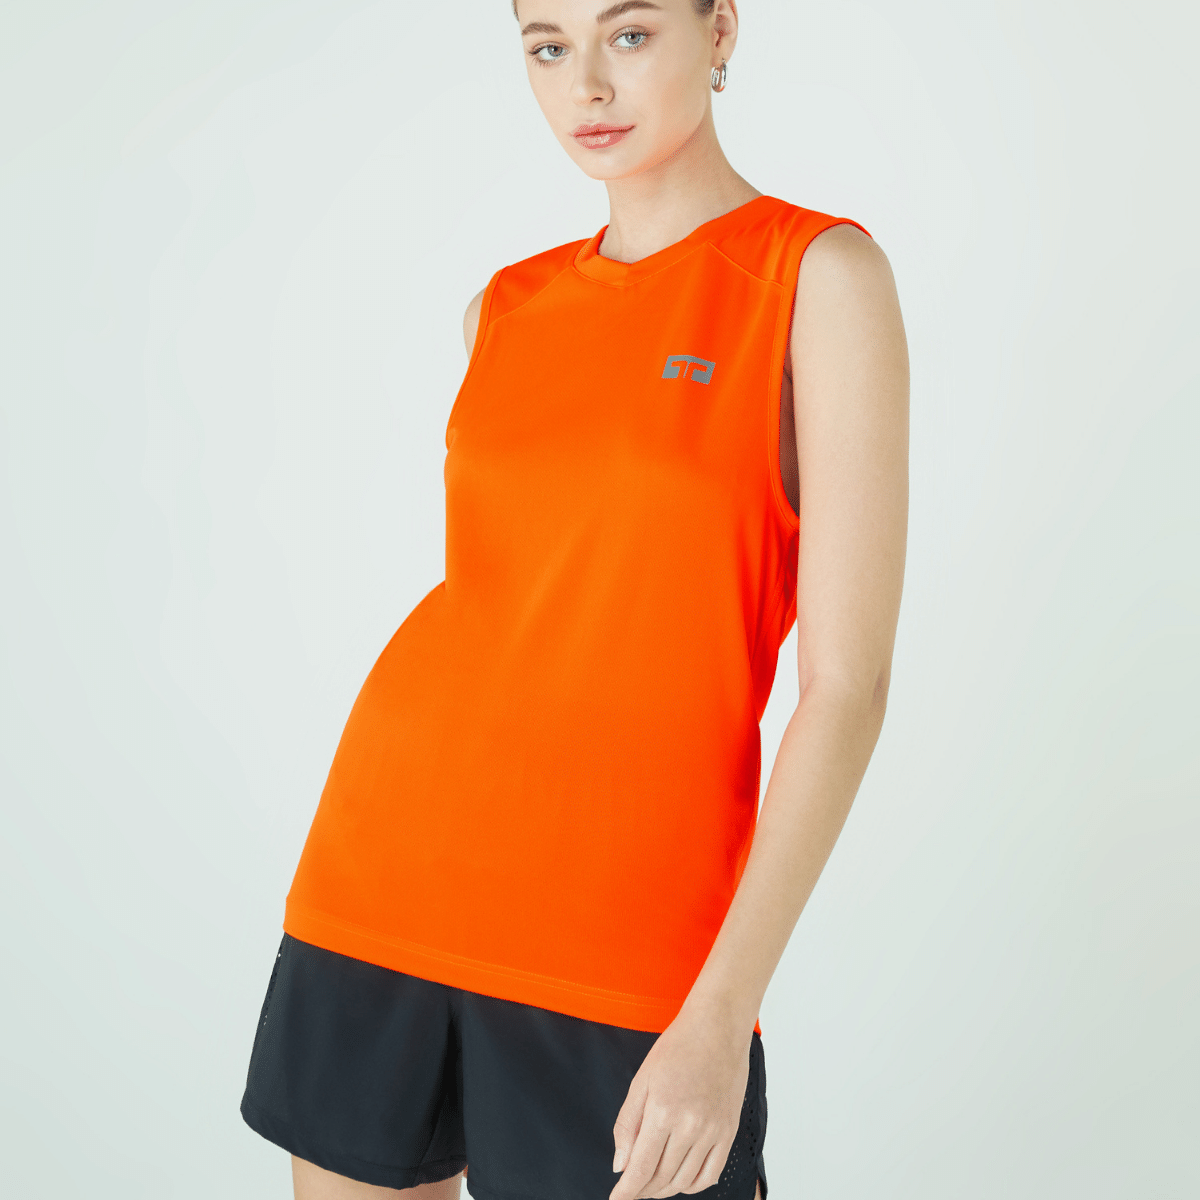 TL LITE Sleeveless Shirt (Solar Orange) เสื้อวิ่ง/เสื้อกีฬา ผู้ชายรุ่น TL Lite สีส้ม